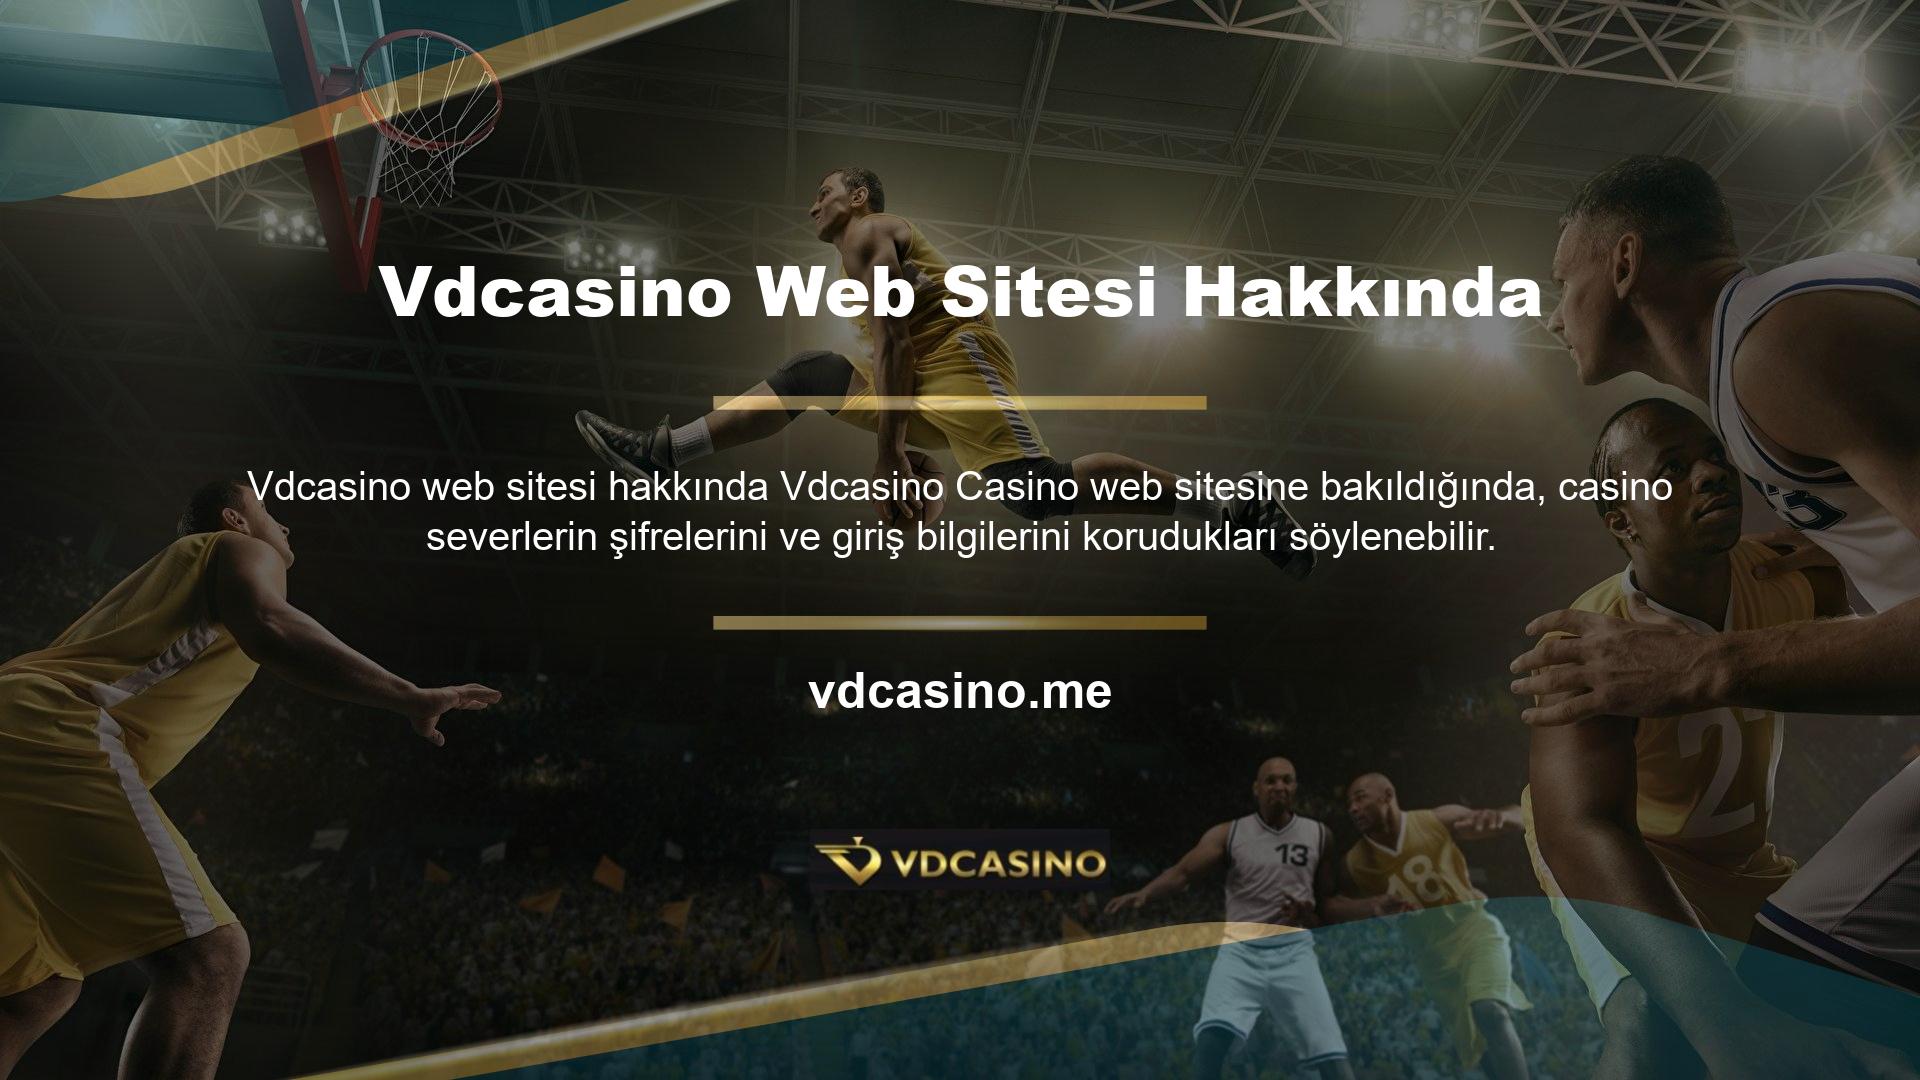 Güvenilir bir sitede vakit geçirmek istiyorsanız Vdcasino casino sitesine üye olarak ücretsiz canlı destek hattımız ile iletişime geçebilir, sorununuzu hızlı ve güvenilir bir şekilde çözebilirsiniz